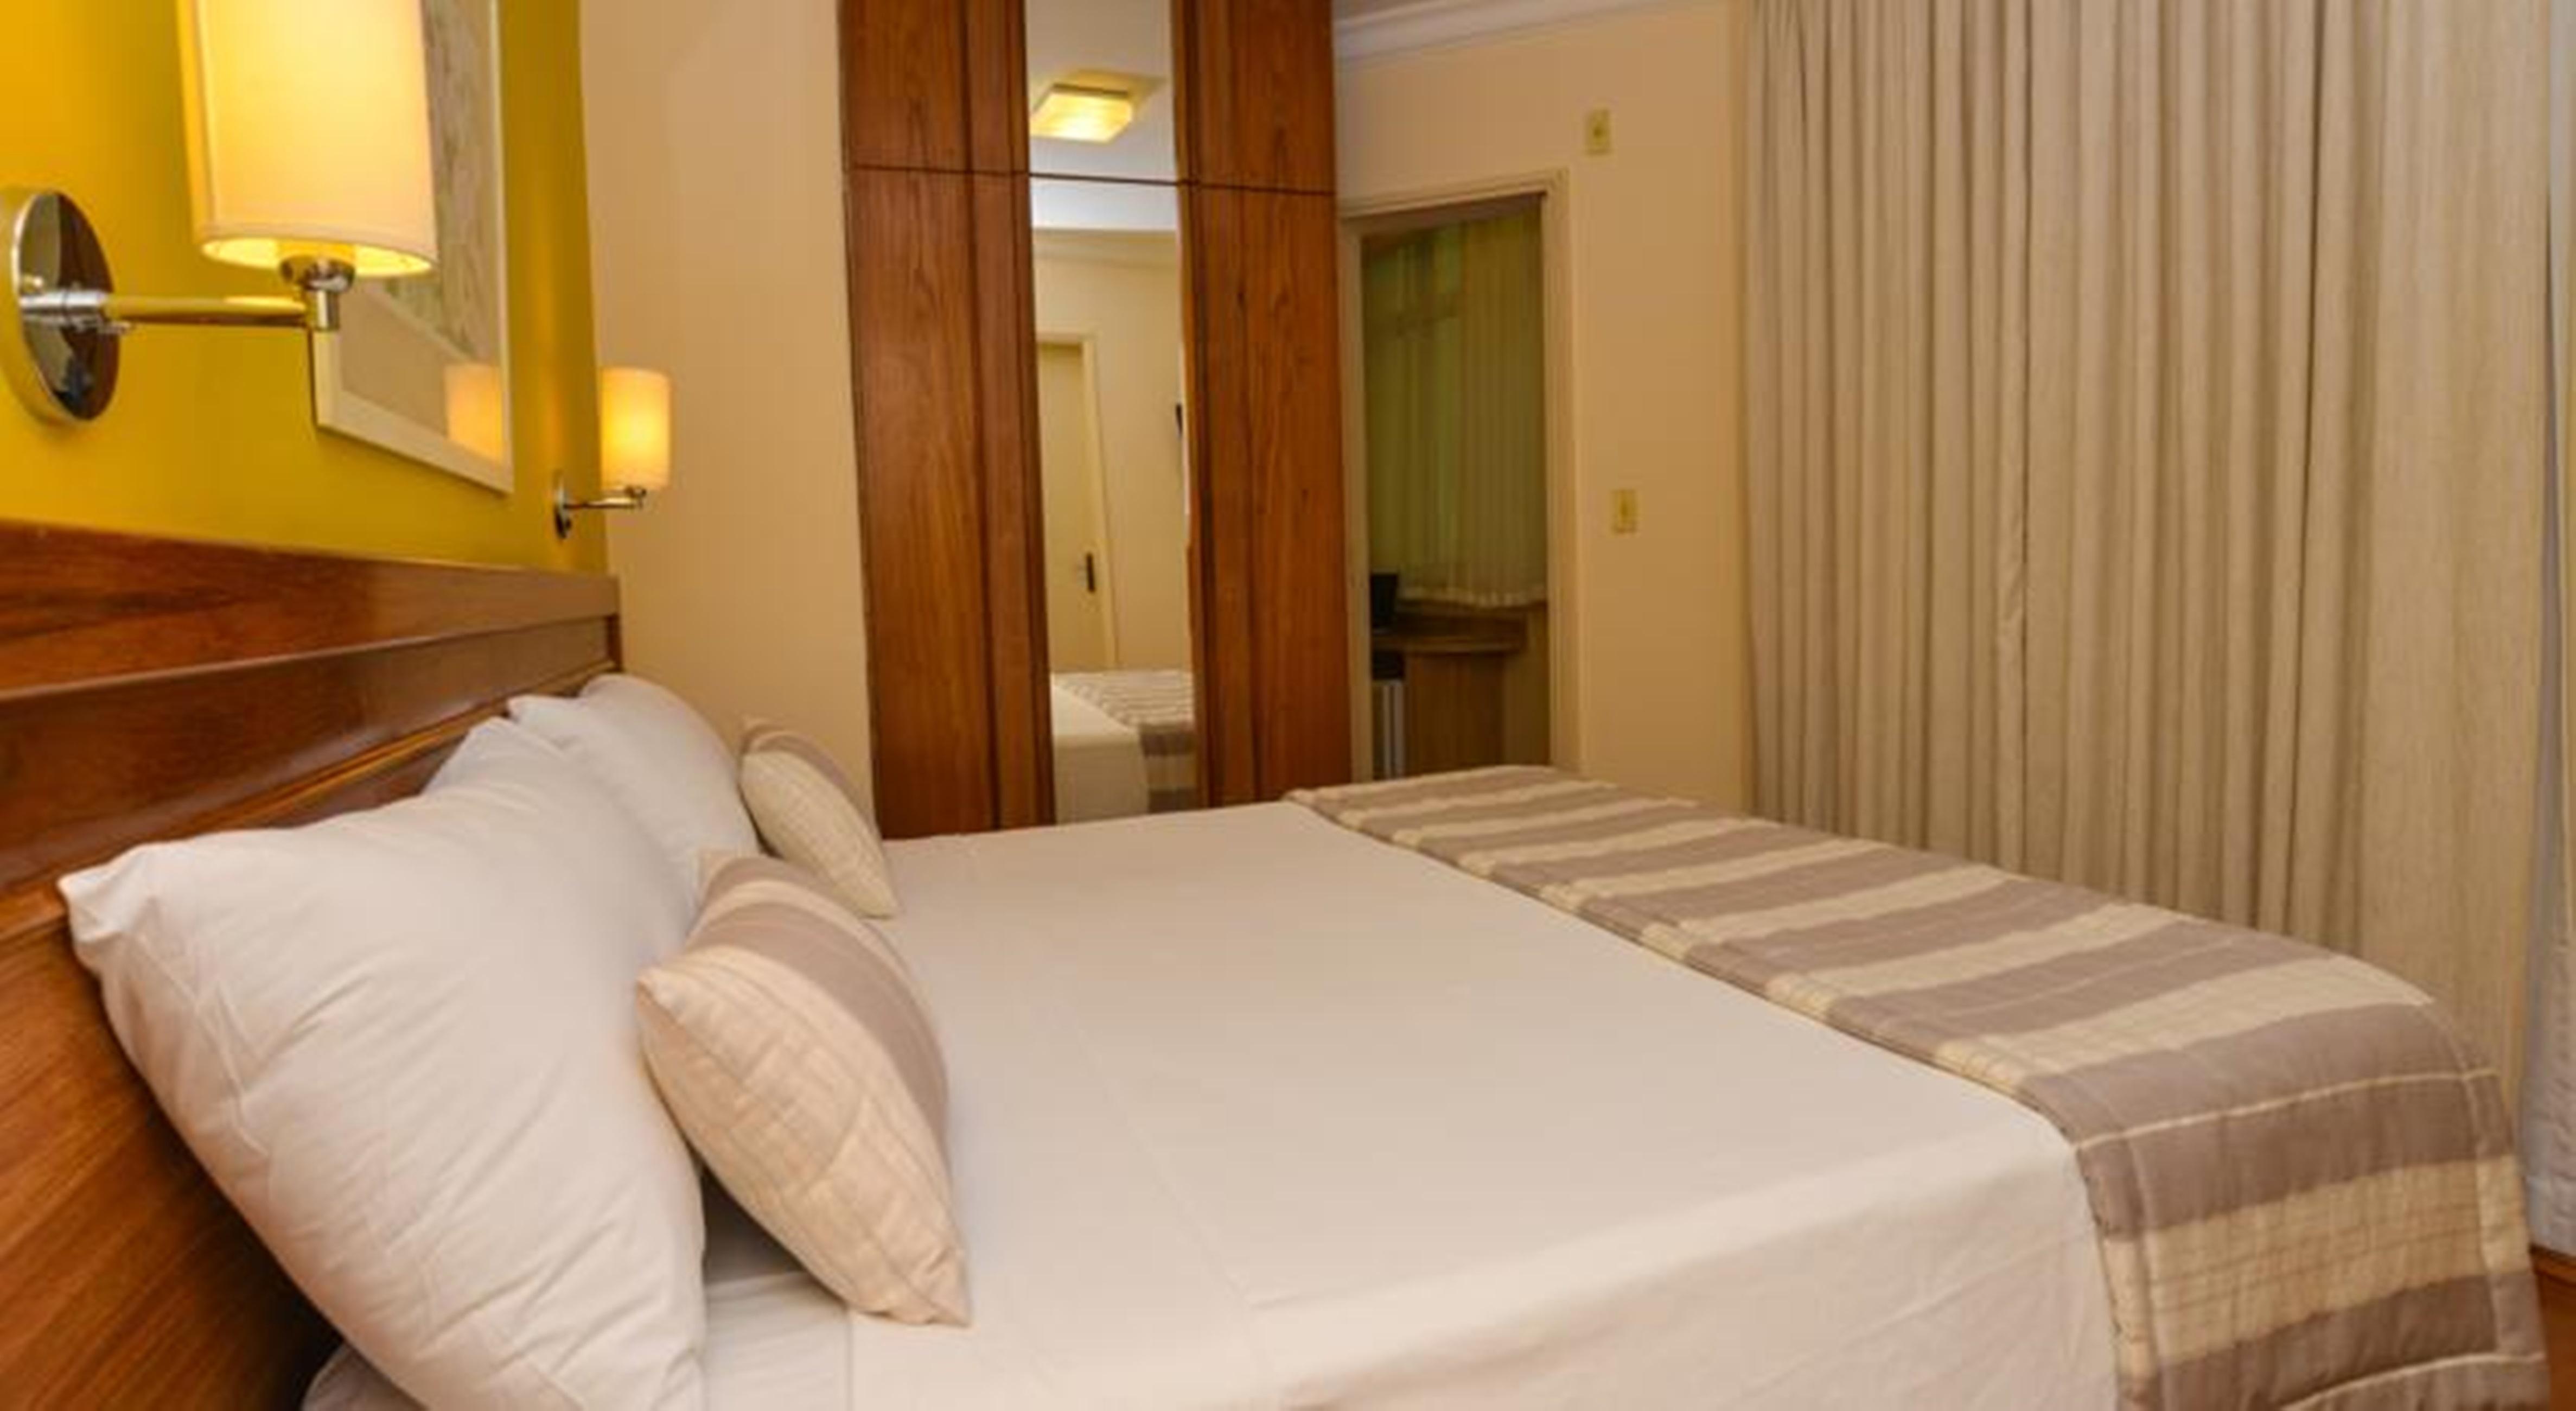 Regency Park Hotel - Soft Opening Рио-де-Жанейро Экстерьер фото